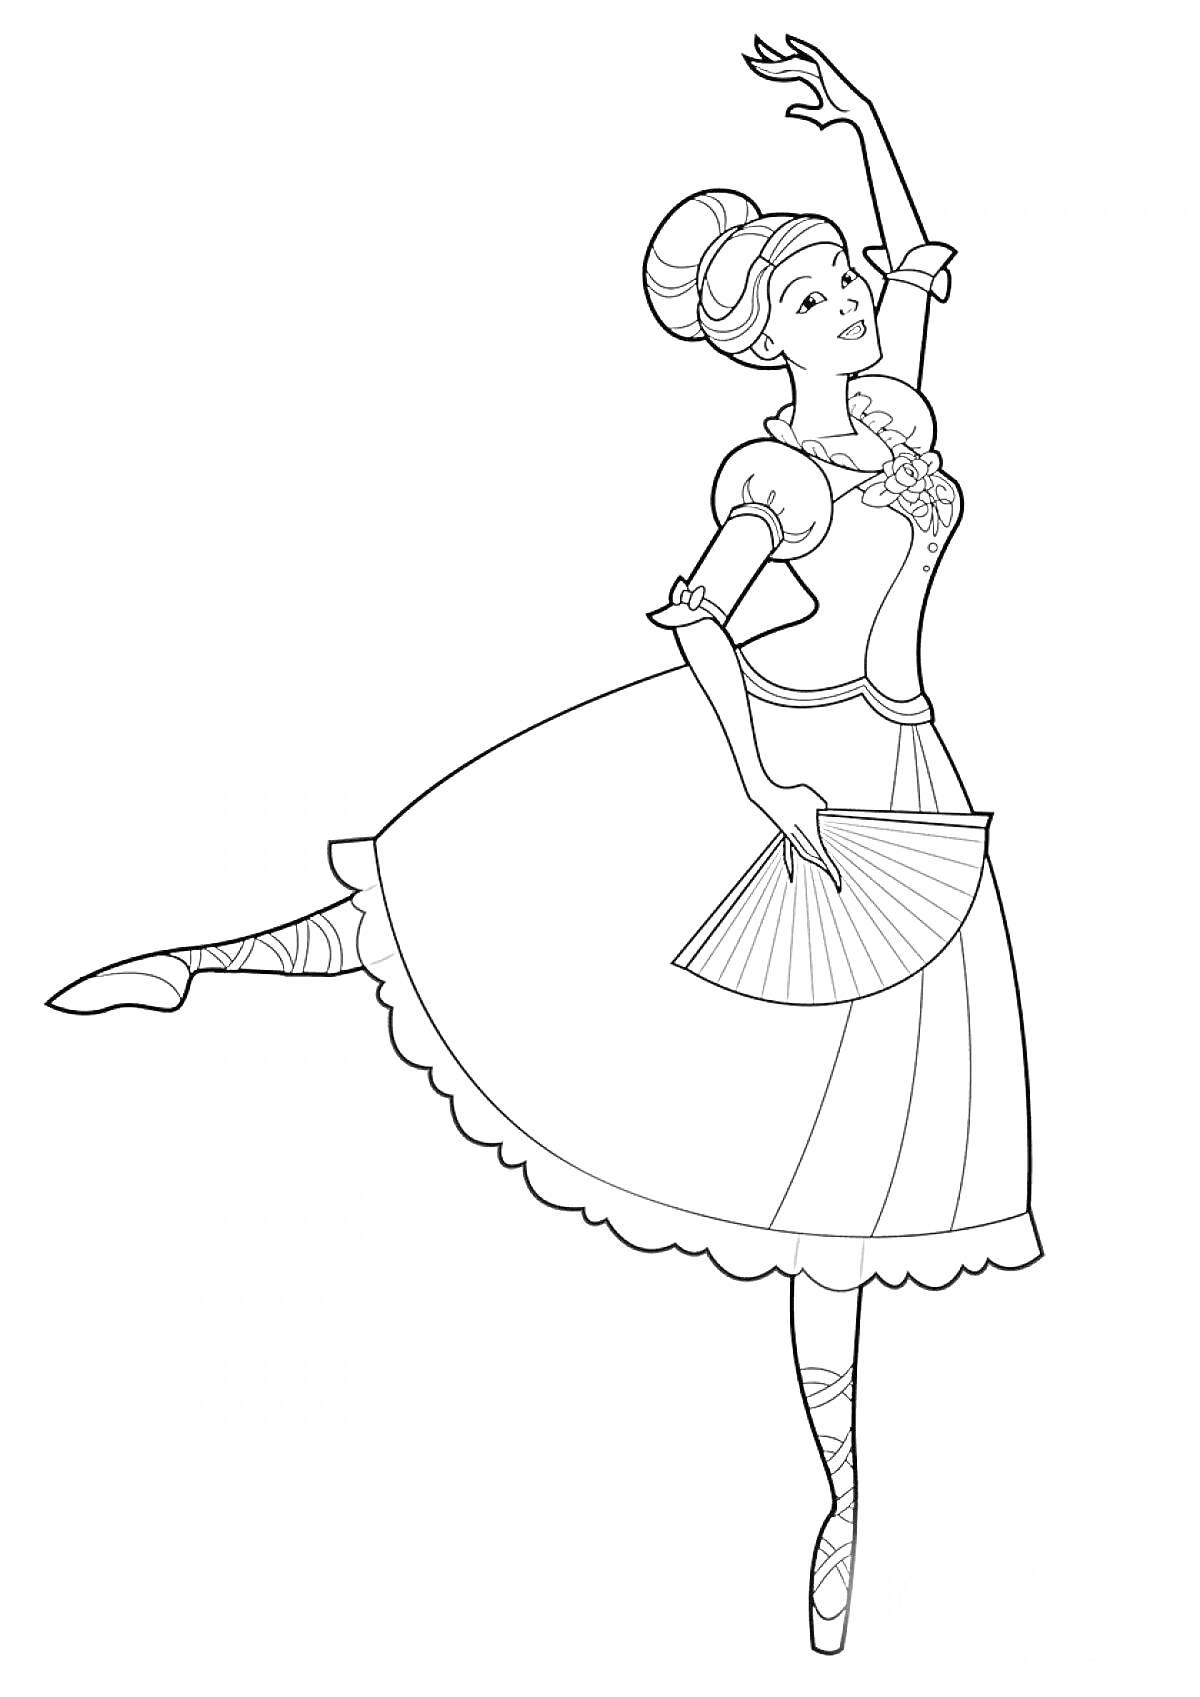 Раскраска Балерина в классическом платье с веером, танцует на пуантах